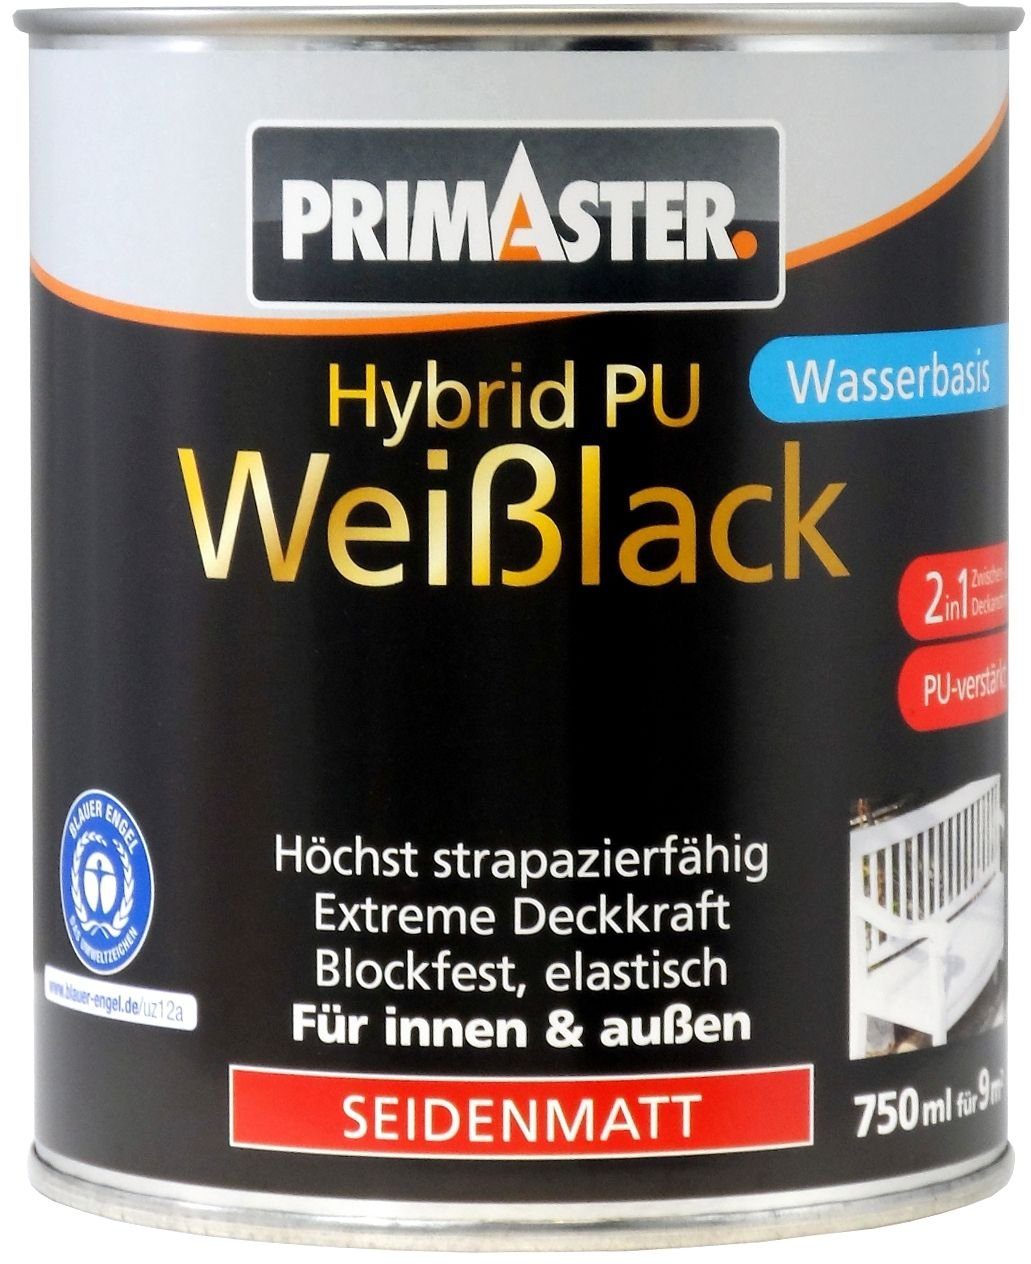 Primaster Weißlack Primaster Hybrid-PU-Weißlack 750 ml seidenmatt